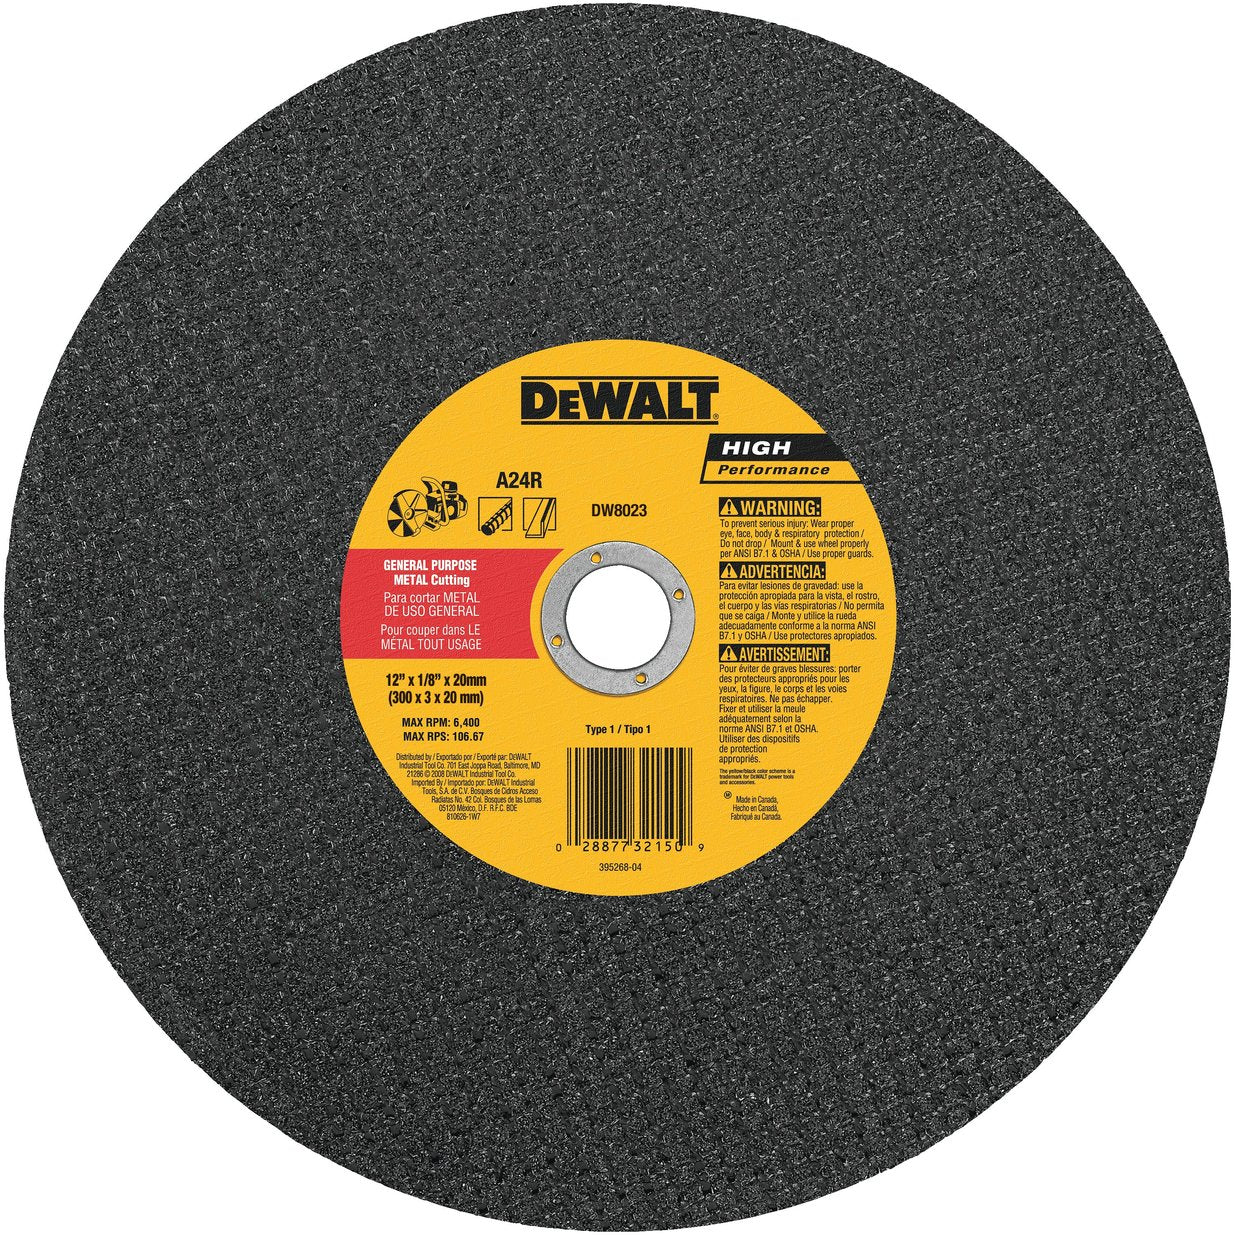 DEWALT DW8023 12-Inch x 1/8-Inch x 20mm A24N Abrasive Metal Cutting Wheel